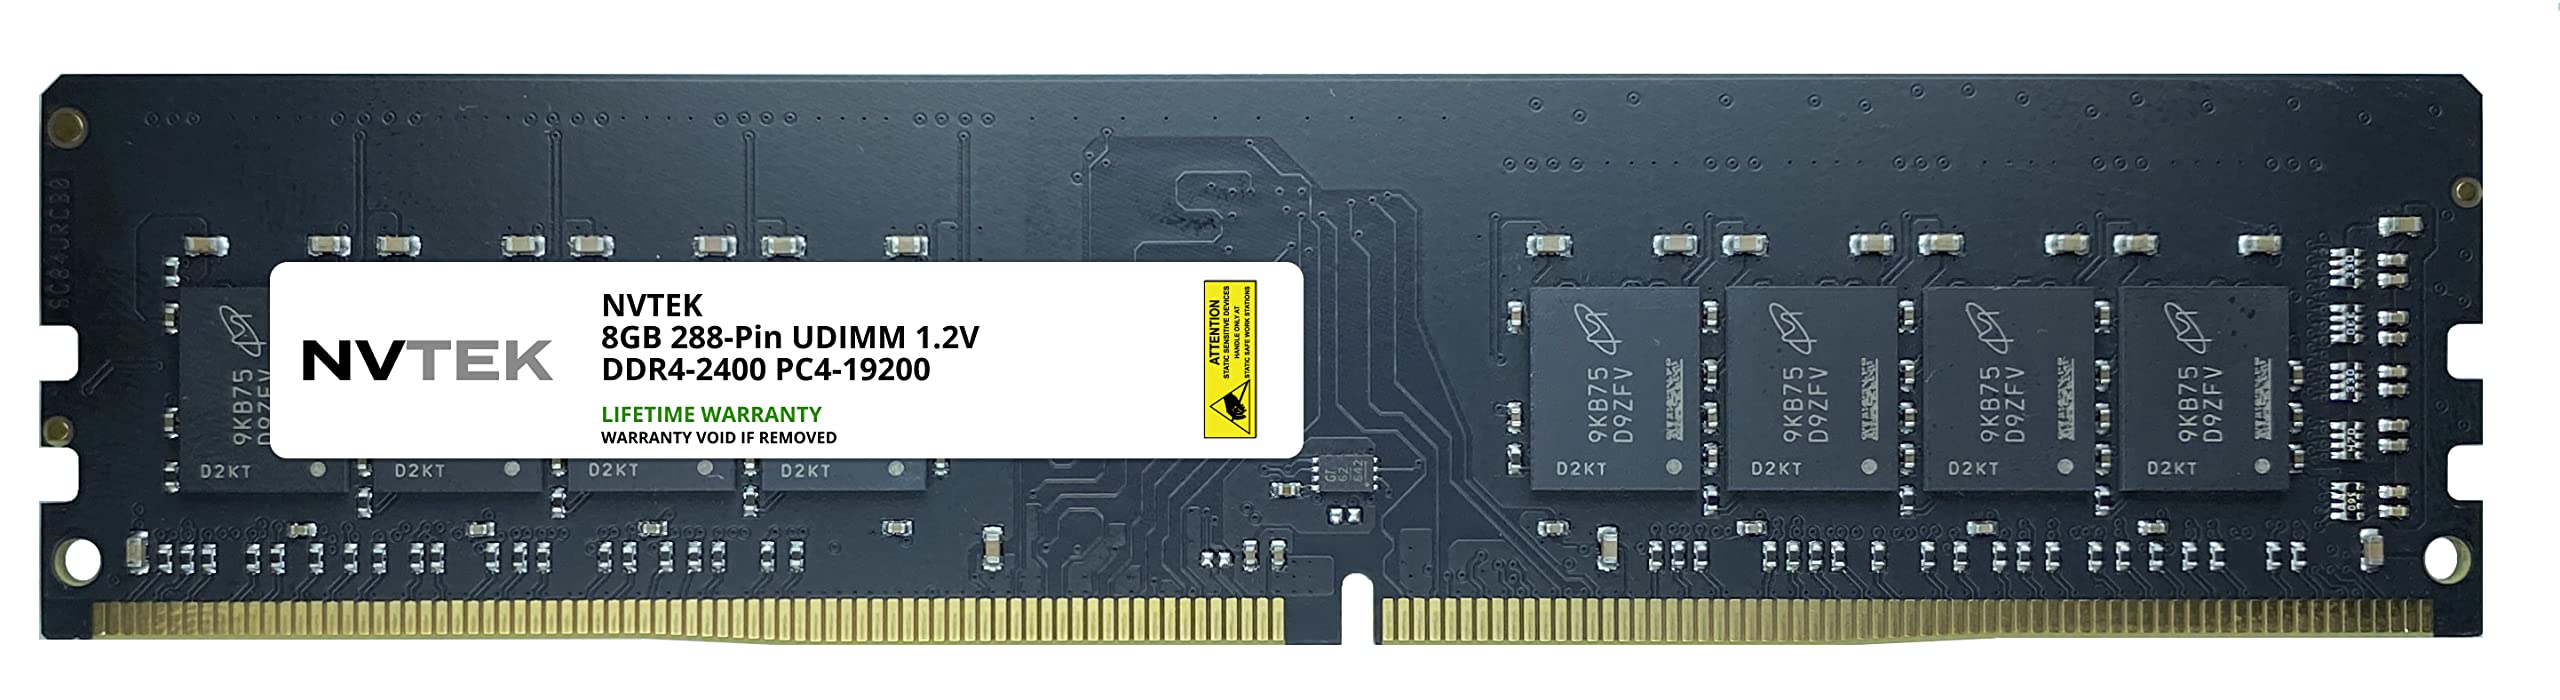 NVTEK 8GB DDR4 2400 PC4 19200 UDIMM デスクトップ RAM メモリモジュール アップグレード CL17 ノンECC ア